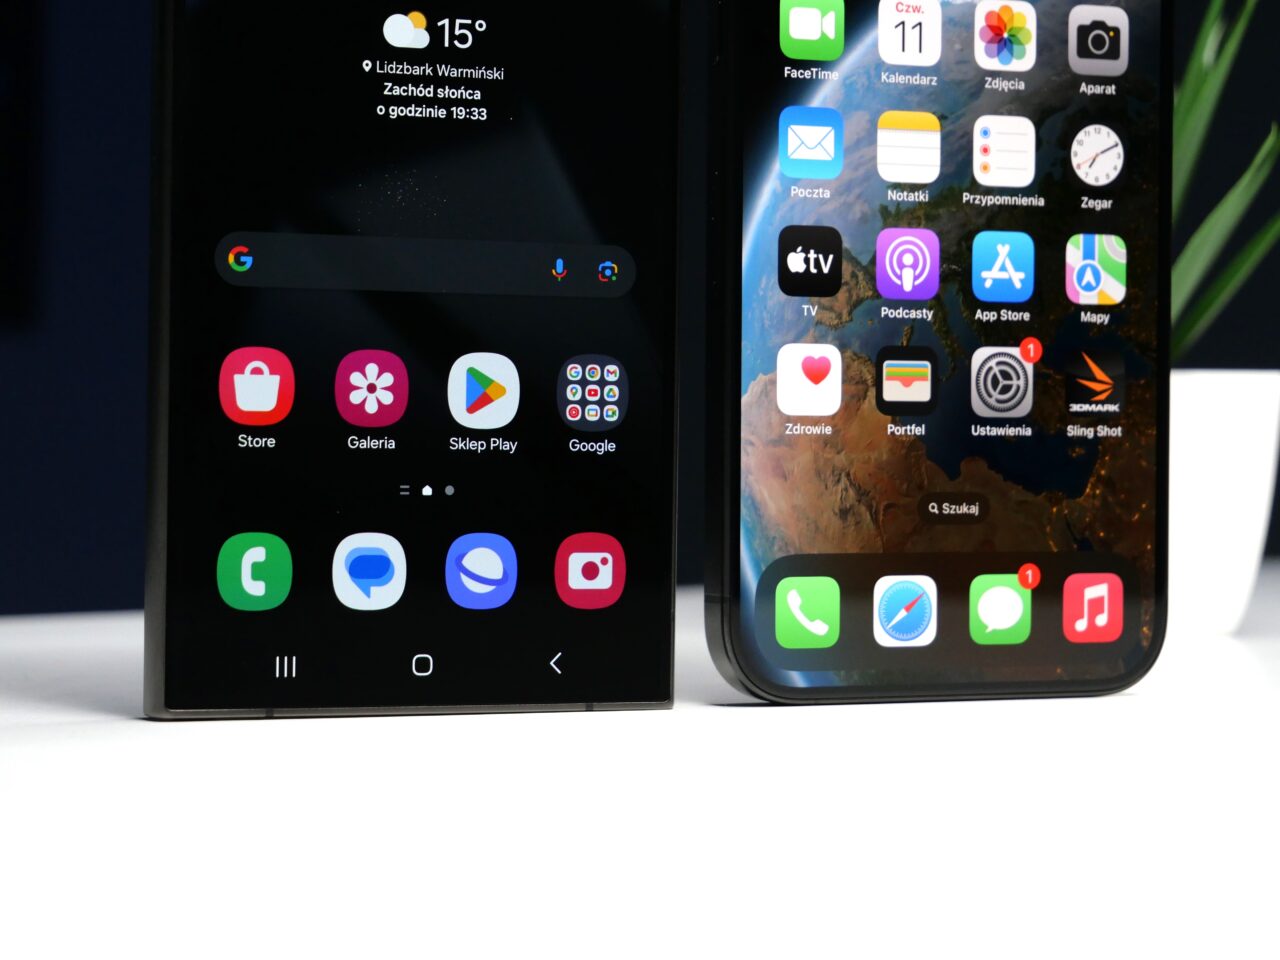 Dwa smartfony postawione obok siebie na biurku, z lewej telefon z interfejsem Android i wyświetlonymi aplikacjami, z prawej iPhone z otwartym ekranem głównym i ikonami aplikacji iOS.